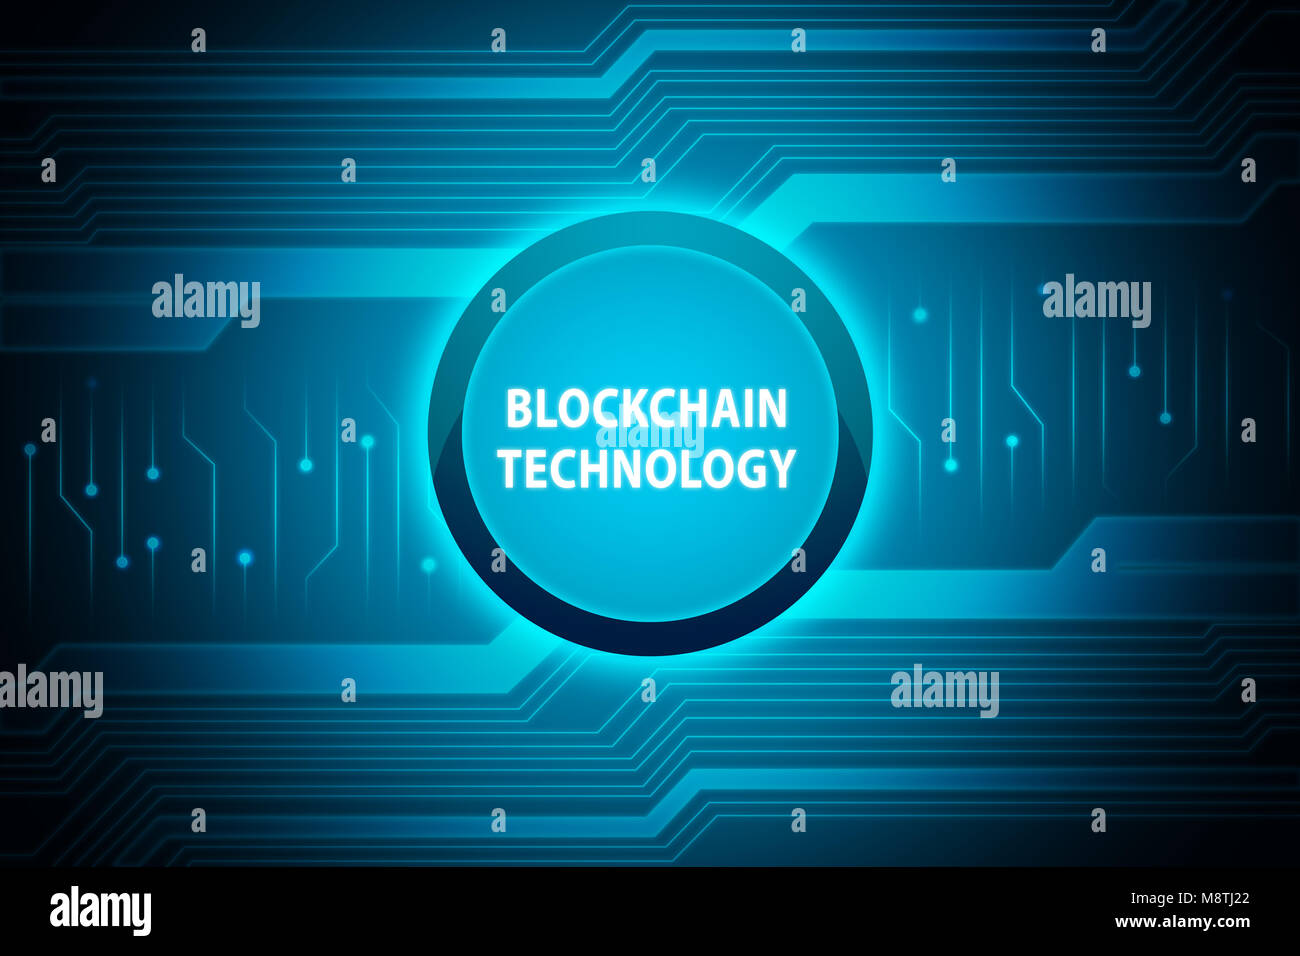 La technologie de l'Blockchain texte sur le bouton bleu avec fond numérique Banque D'Images